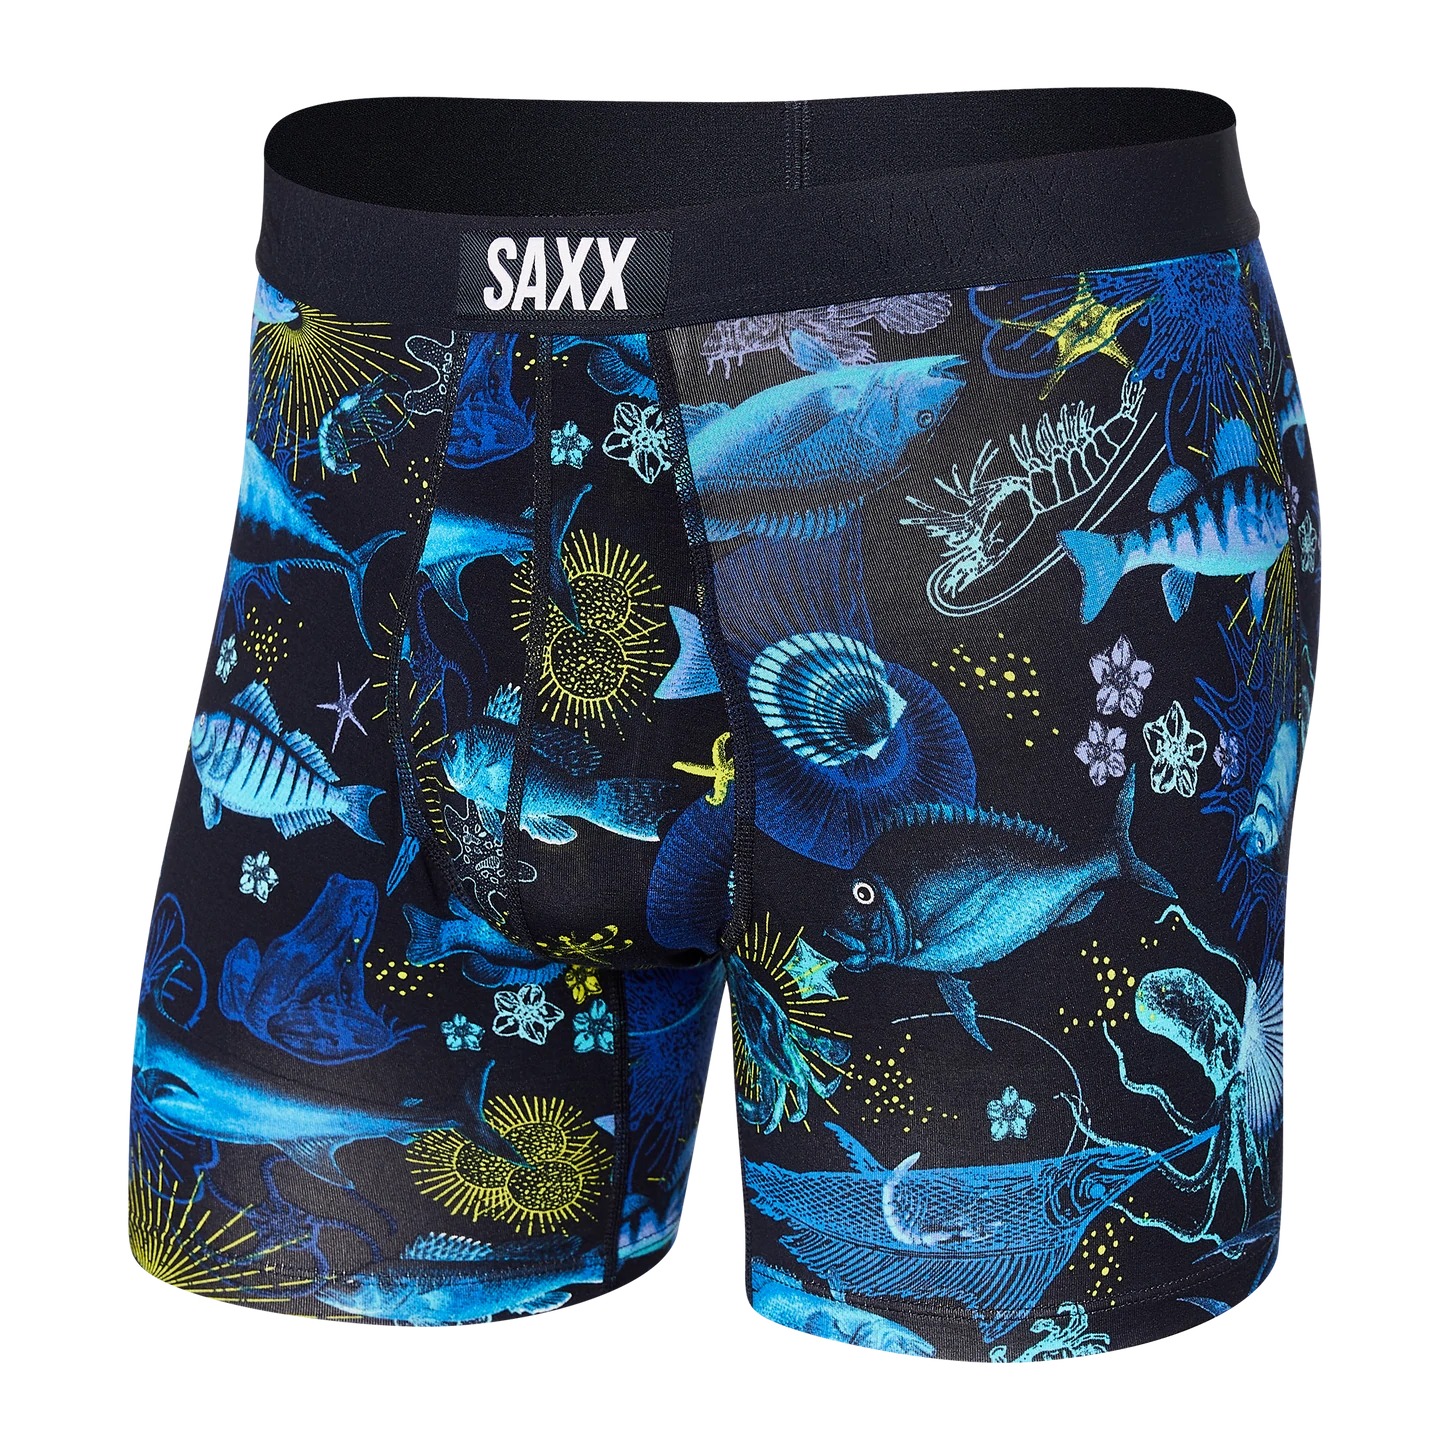 Saxx Ultra Boxer Brief-Undersea Garden - Dark Ink - Uplift Intimate Apparel